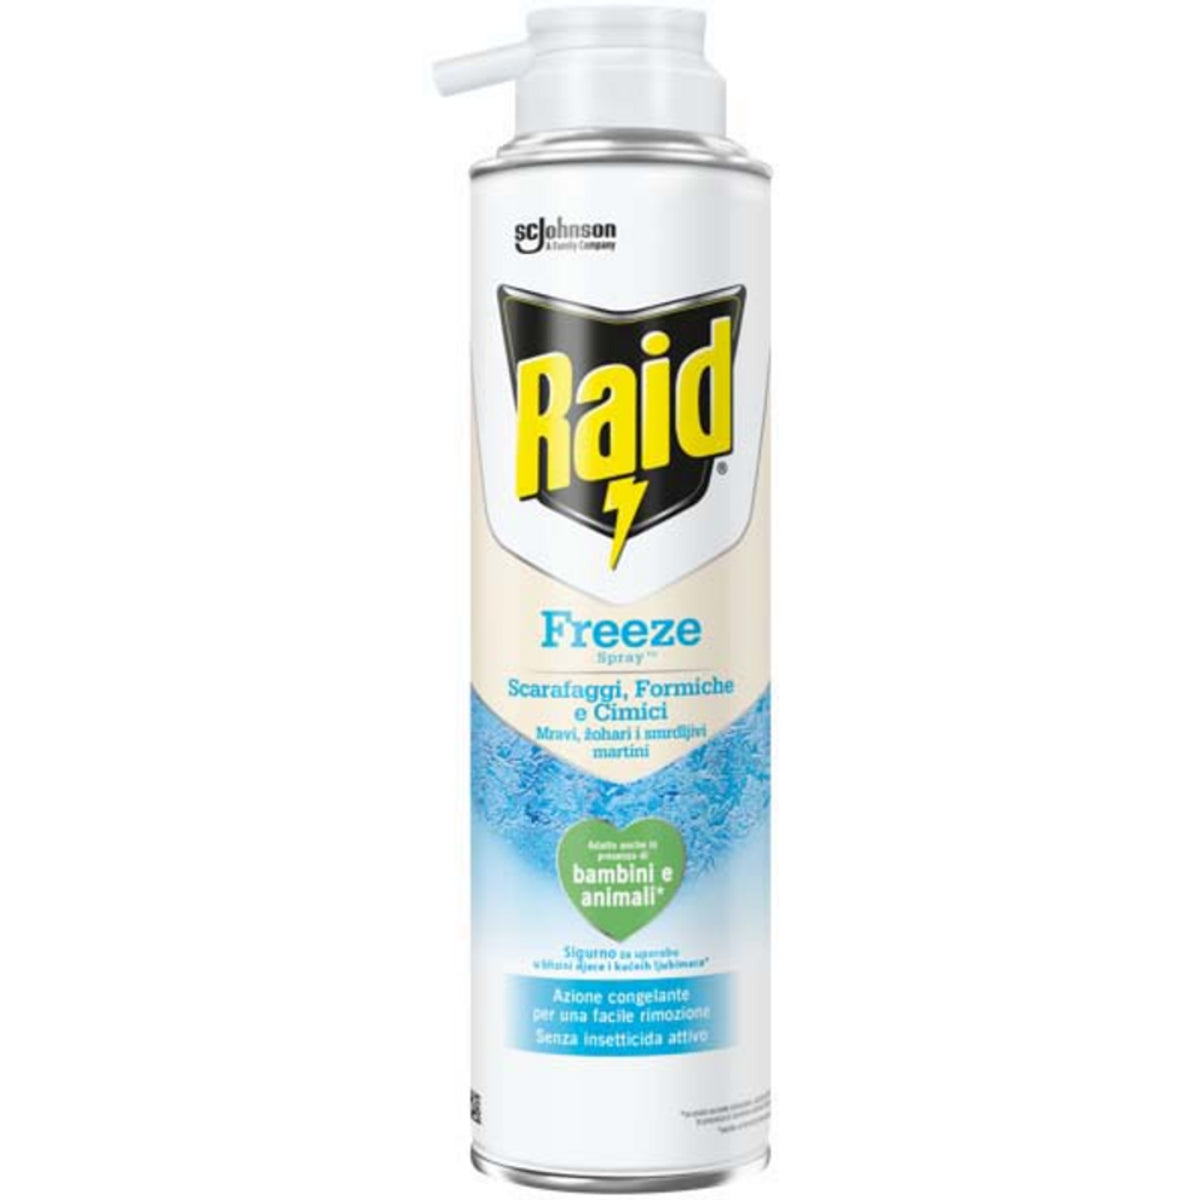 RAID Freeze spray -csótányok, hangyák és ágyneműk 350 ml